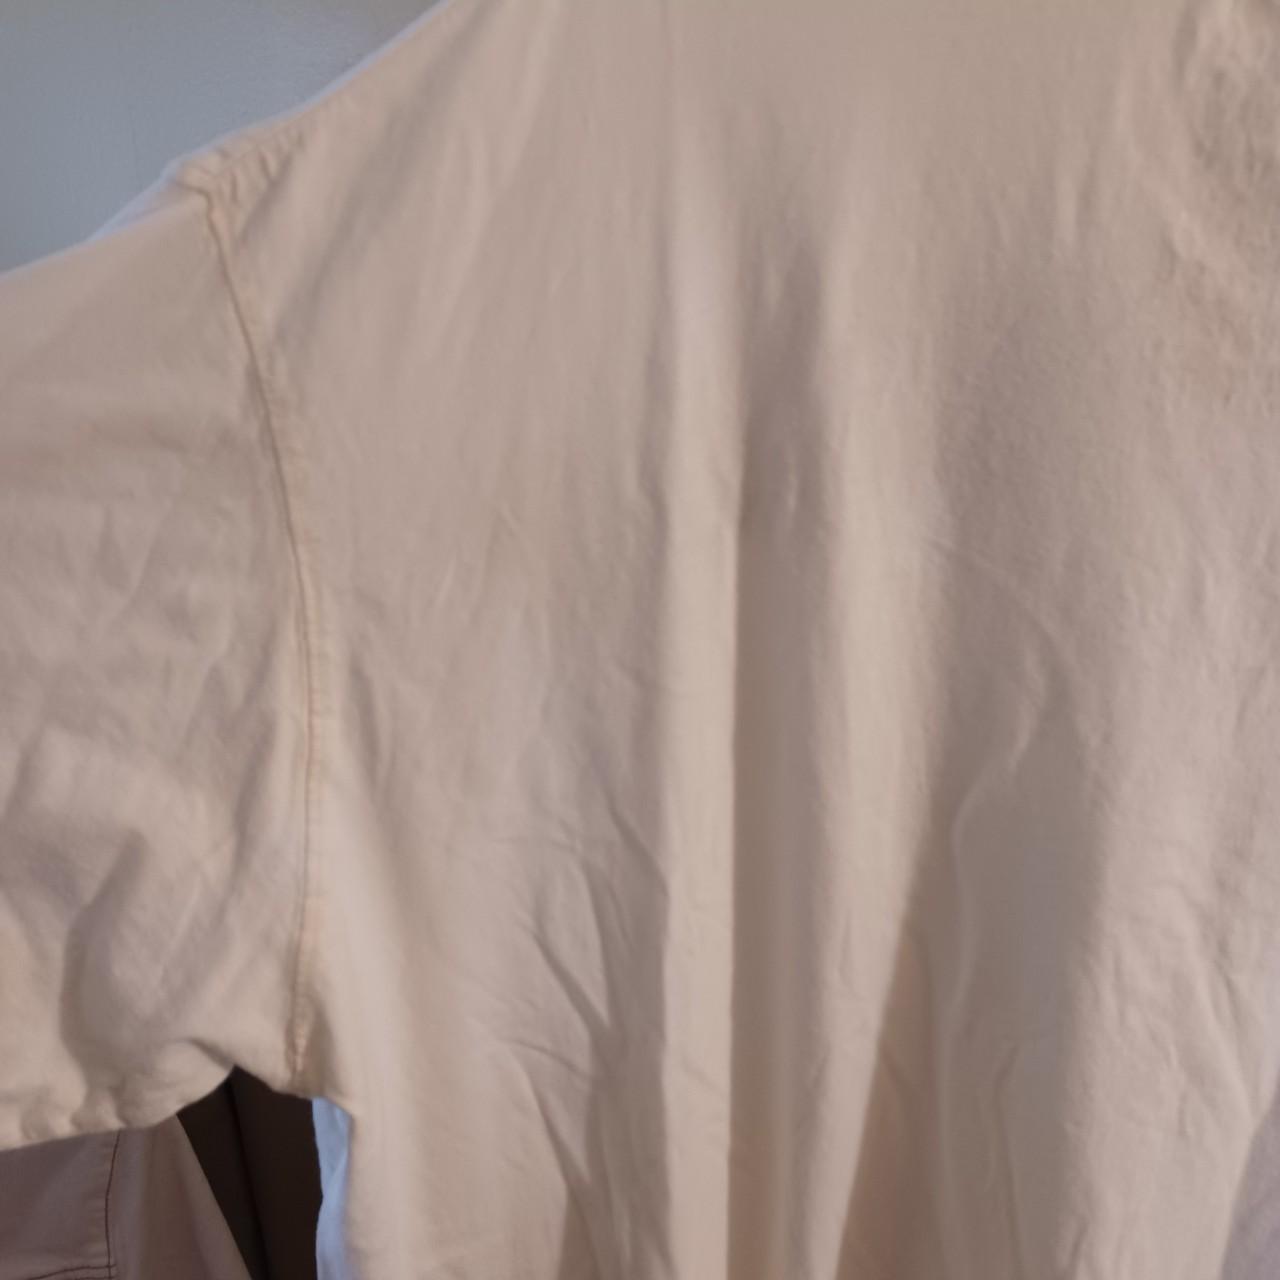 Pelle Pelle Men's White and Brown T-shirt (4)